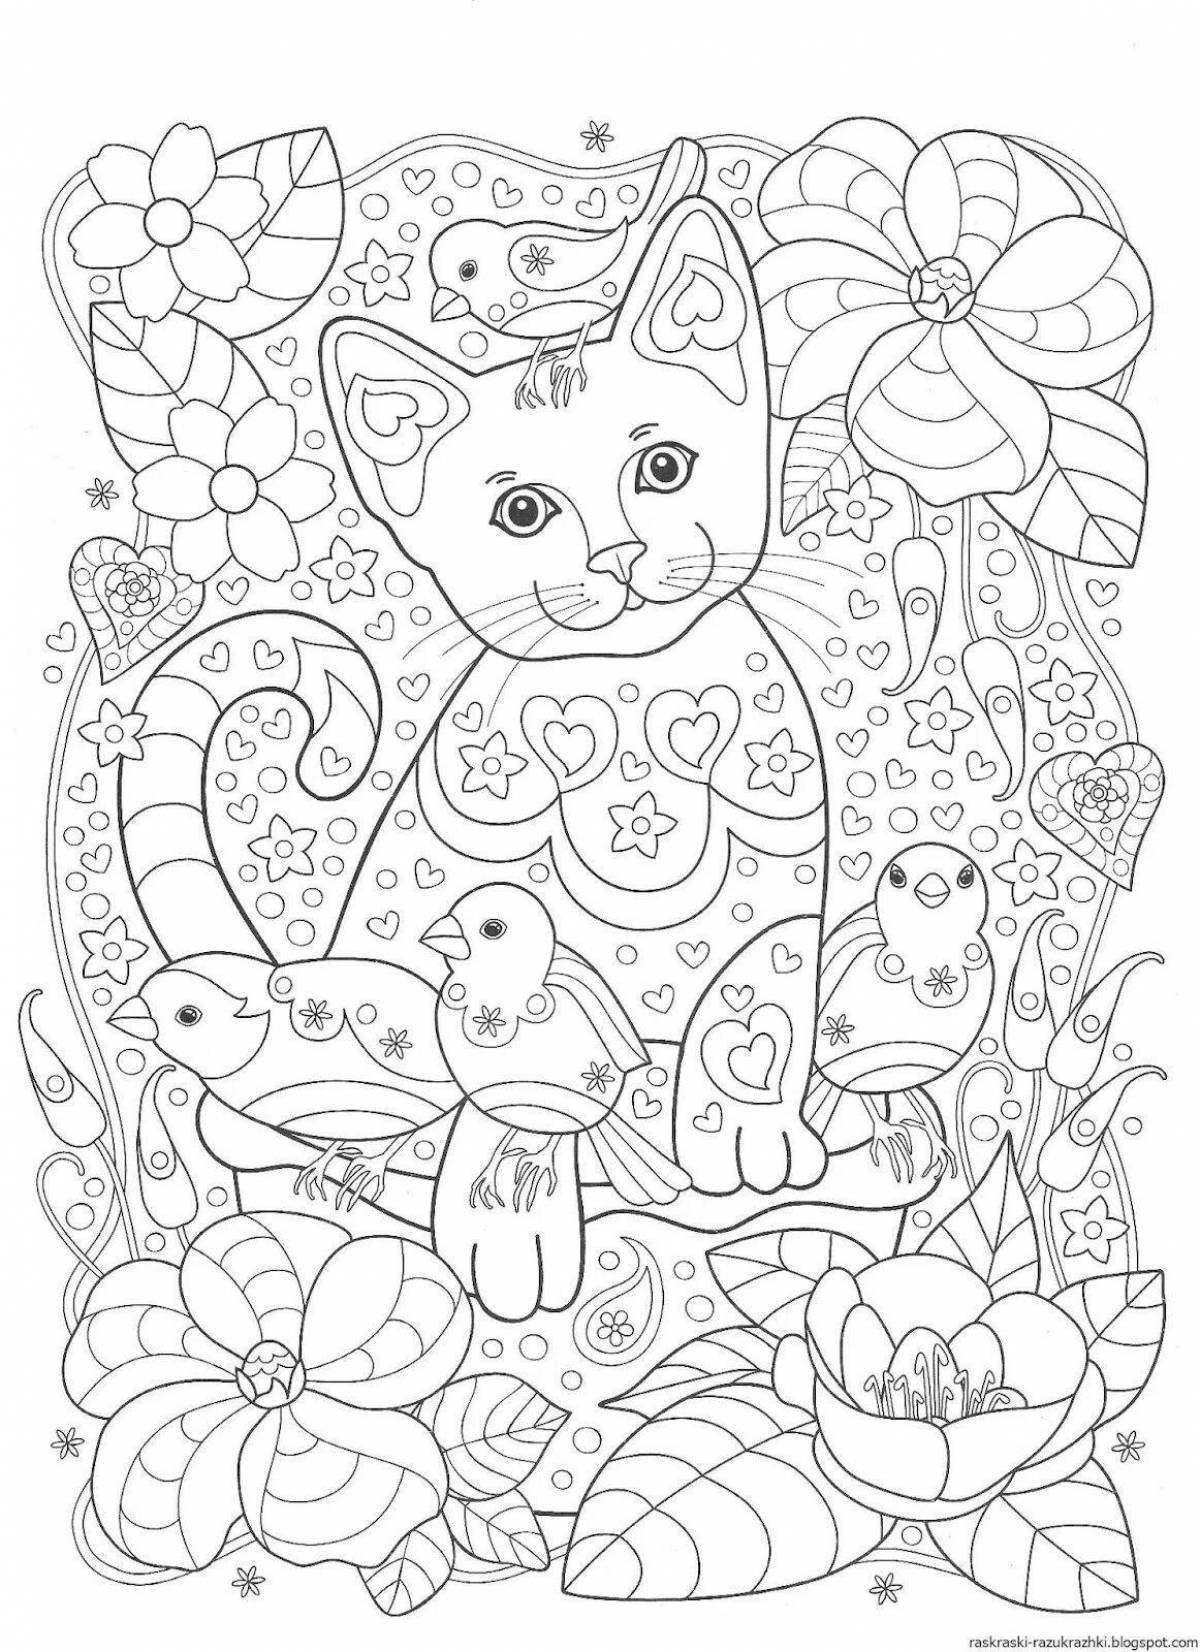 Яркая раскраска для девочек 8 лет кошки